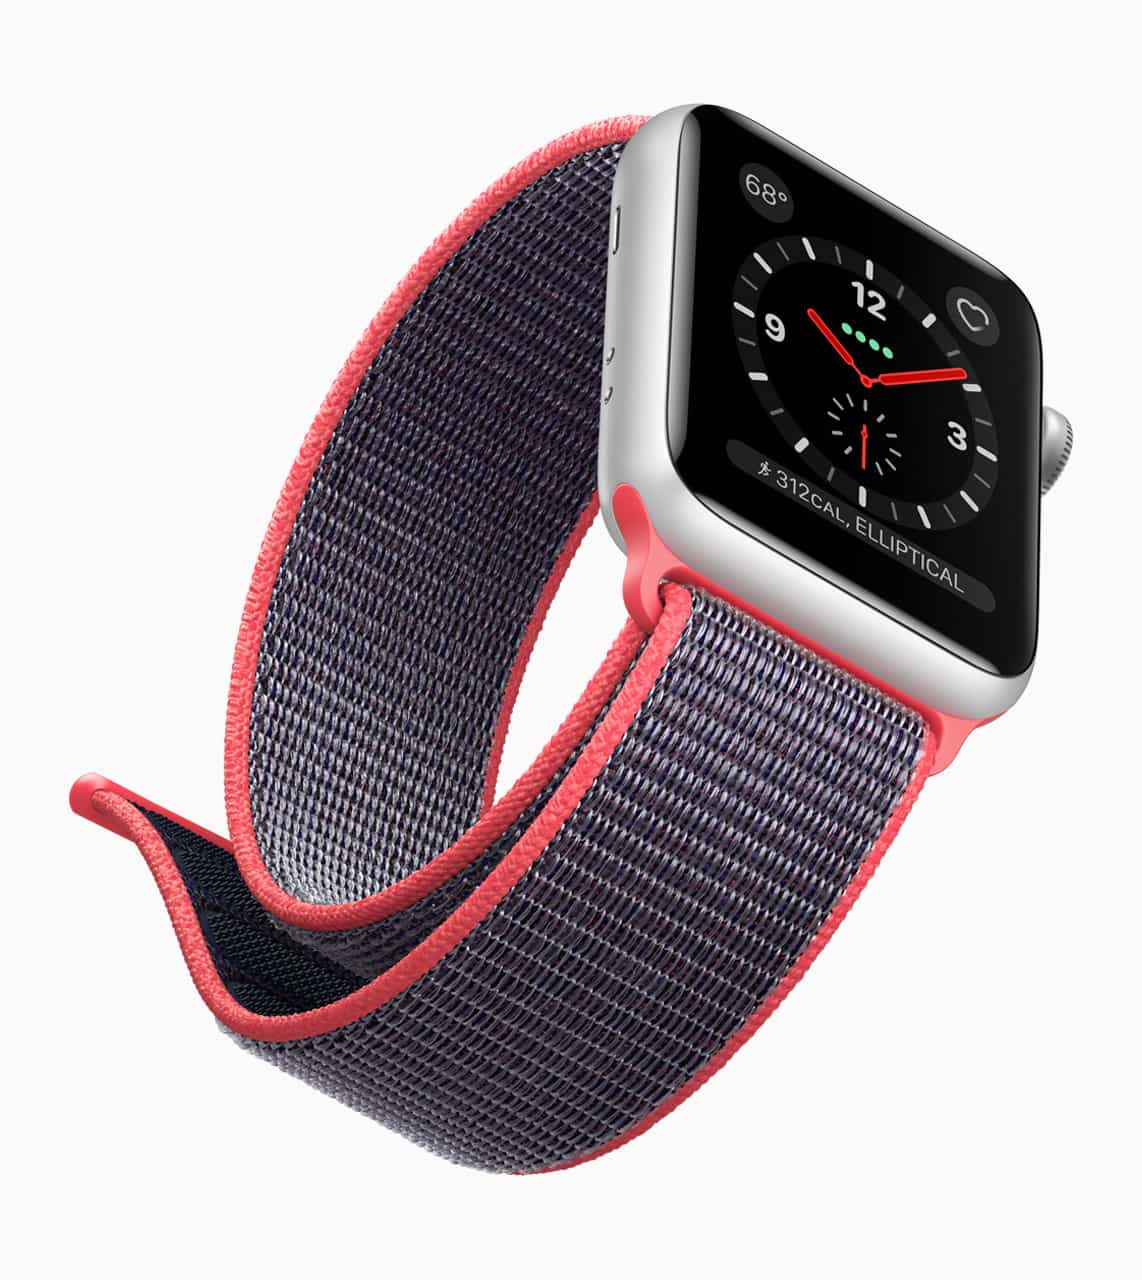 Apple Watch Series 3 (GPS) Türkiye'de satışa sunuldu